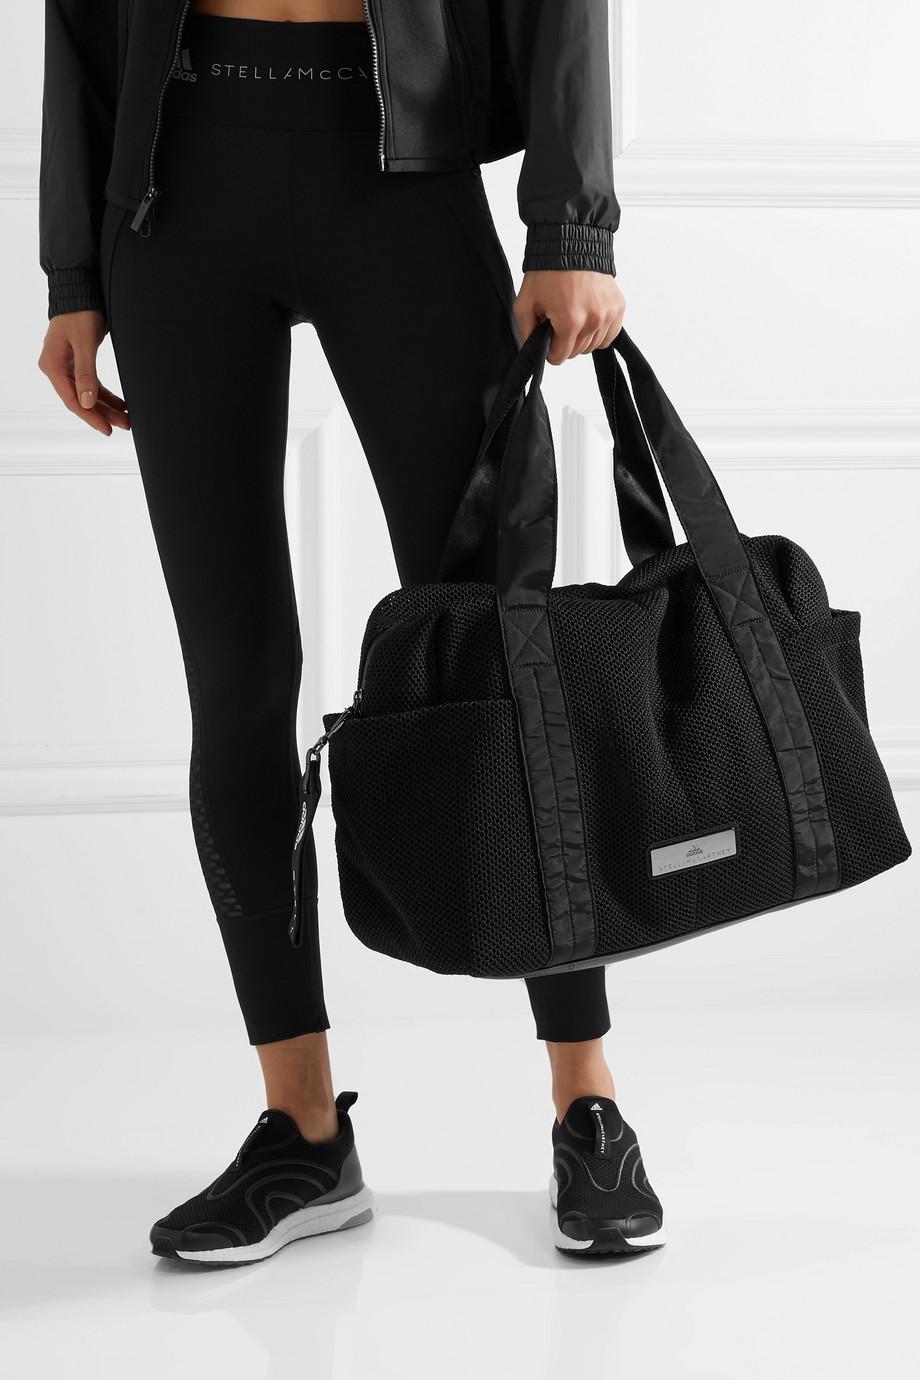 adidas By Stella McCartney Shipshape Mesh Gym Bag in Black - Lyst